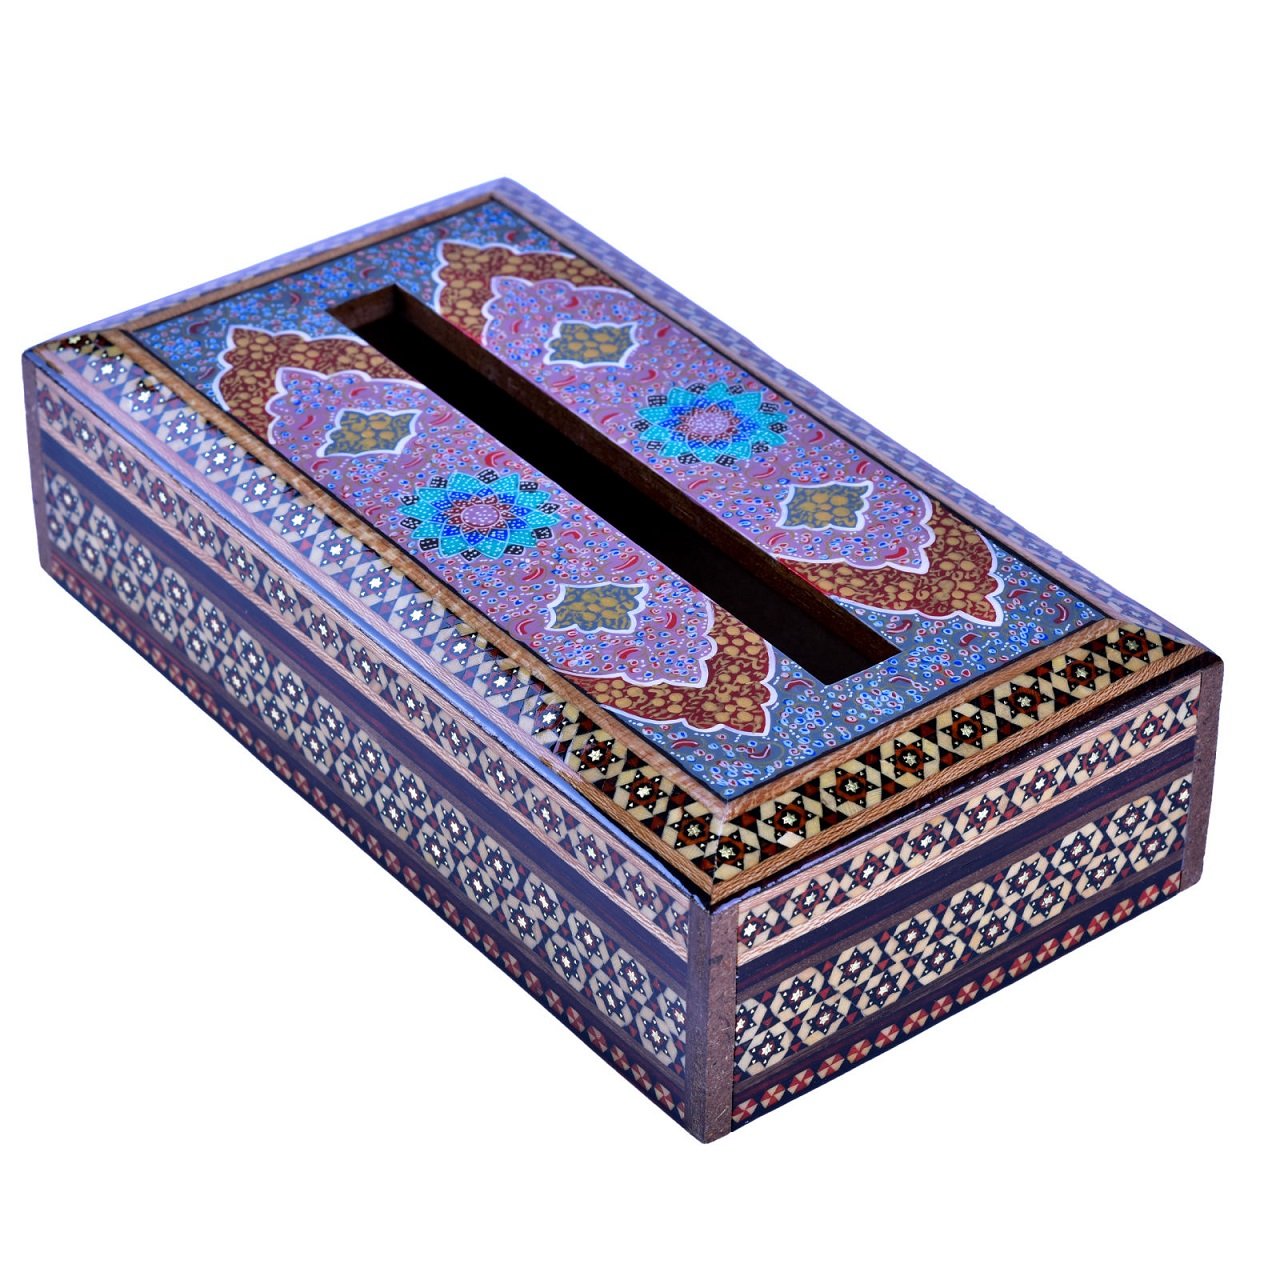 Khatam Tissue Box tazhib design aseman model code 2614 , Khatam Tissue, Inlaid, Khatam Tissue Box, Khatam